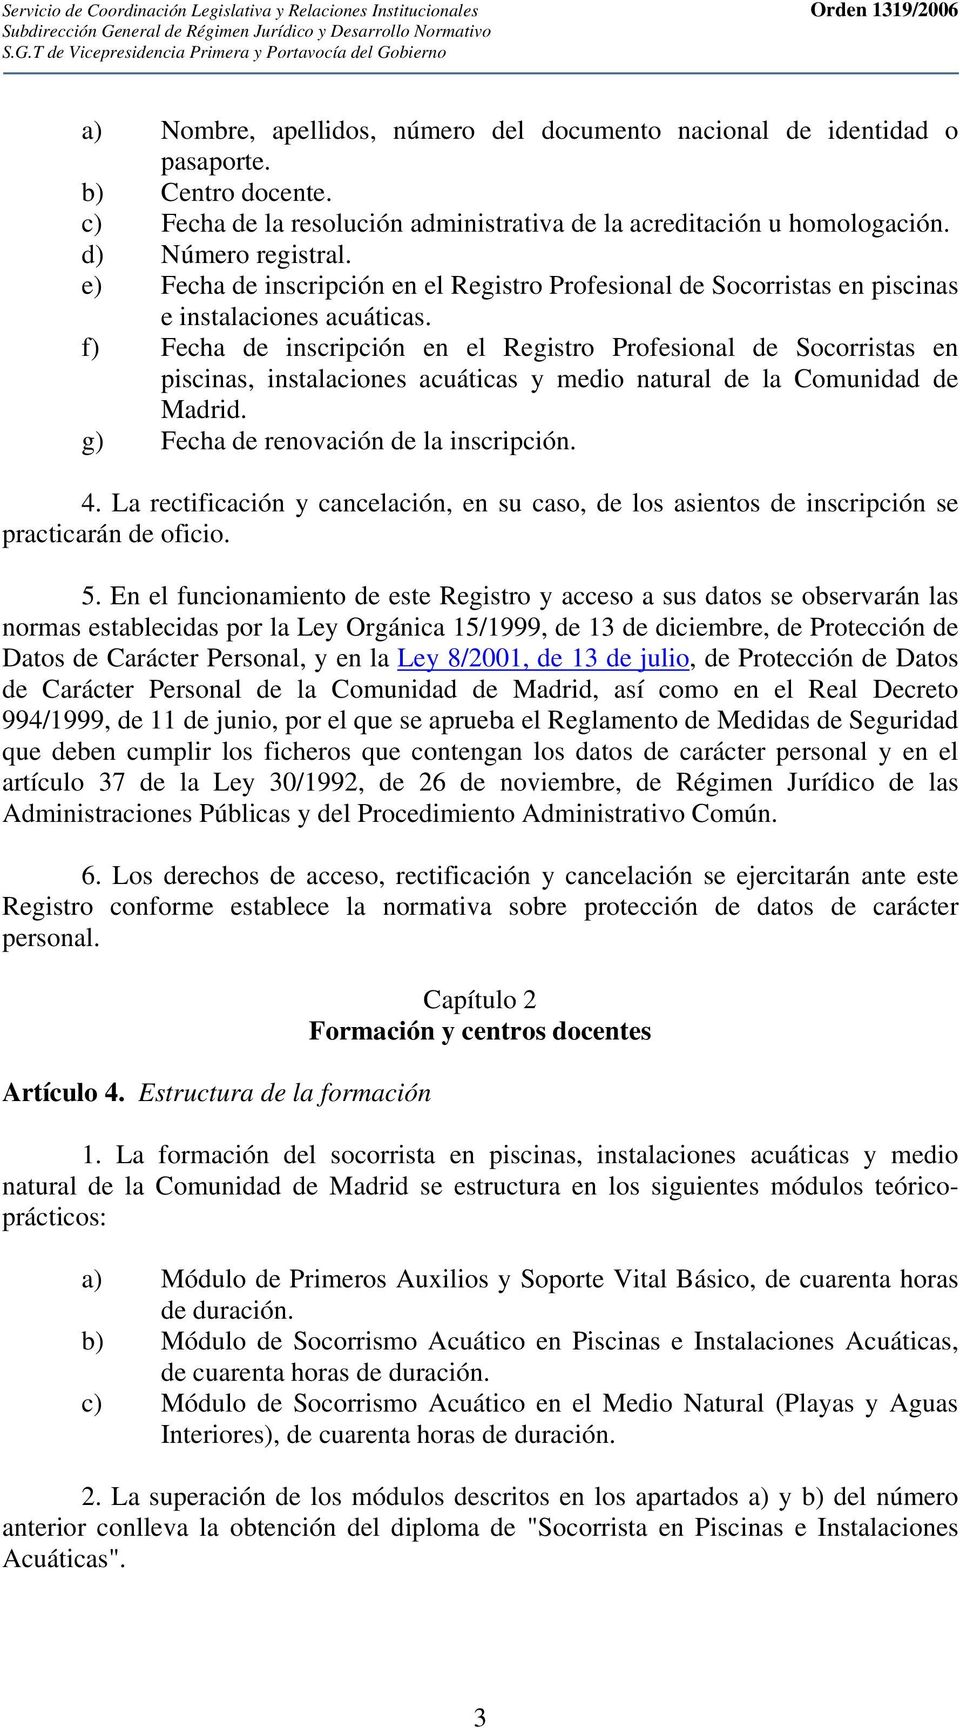 b) Centro docente. c) Fecha de la resolución administrativa de la acreditación u homologación. d) Número registral.